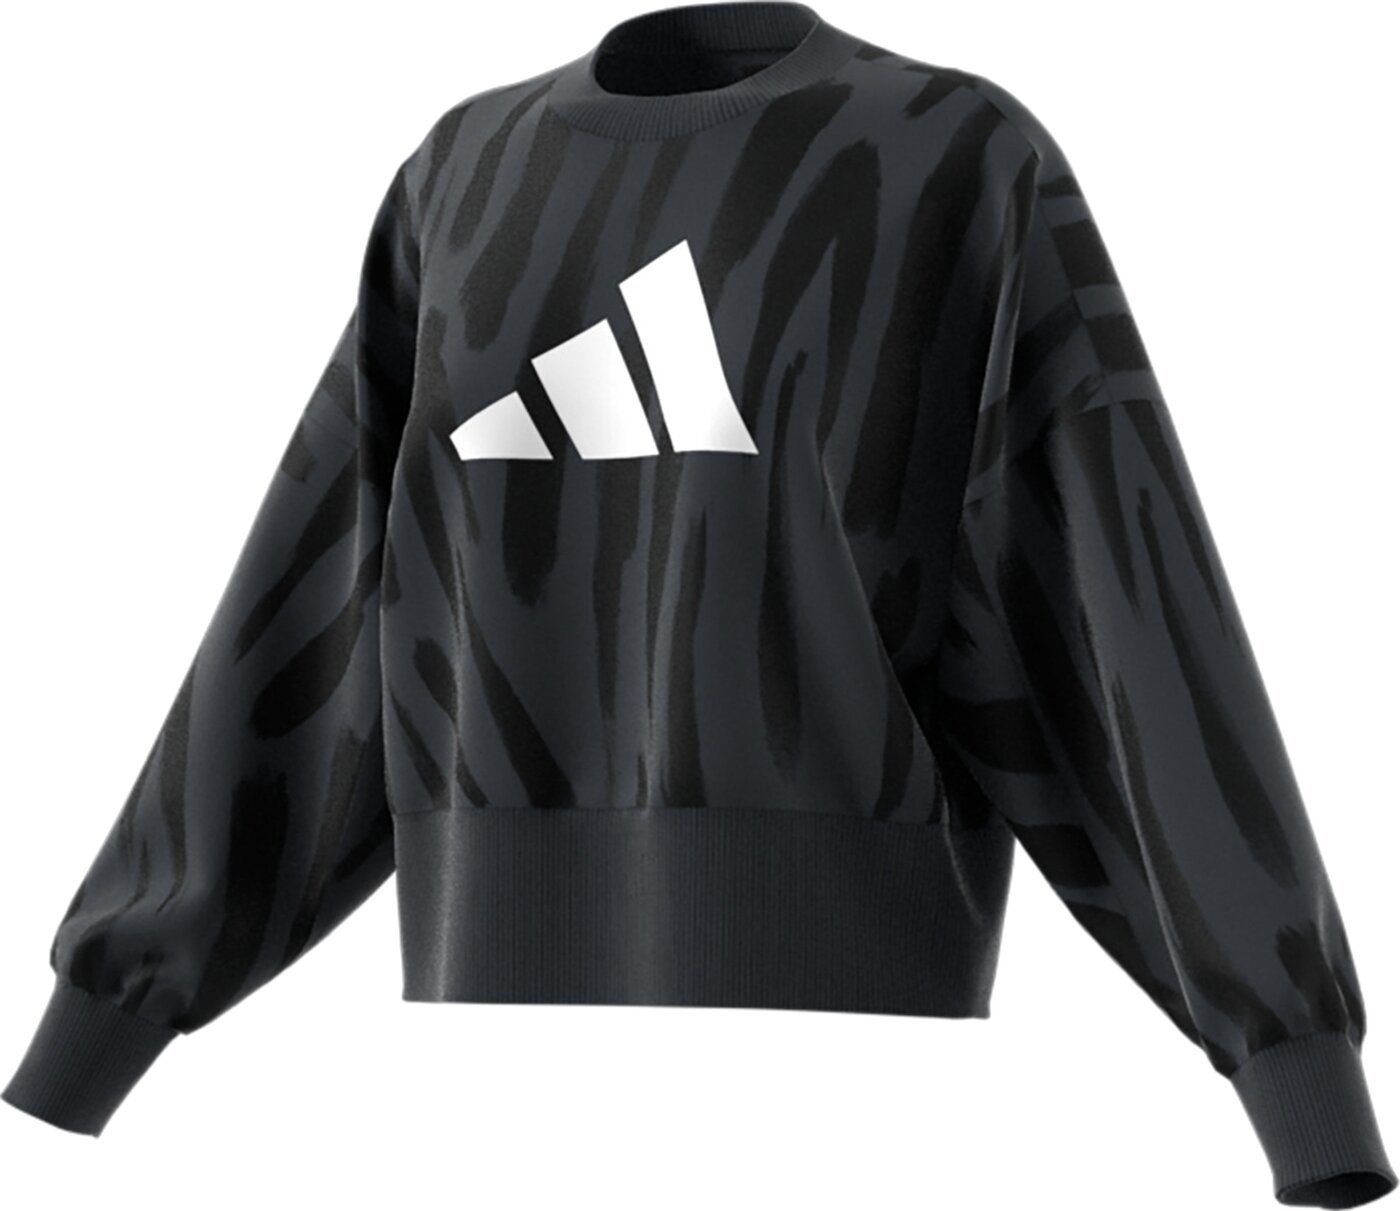 CREW W Sweatshirt adidas FI FF MULTCO/CARBON/BLACK Sportswear